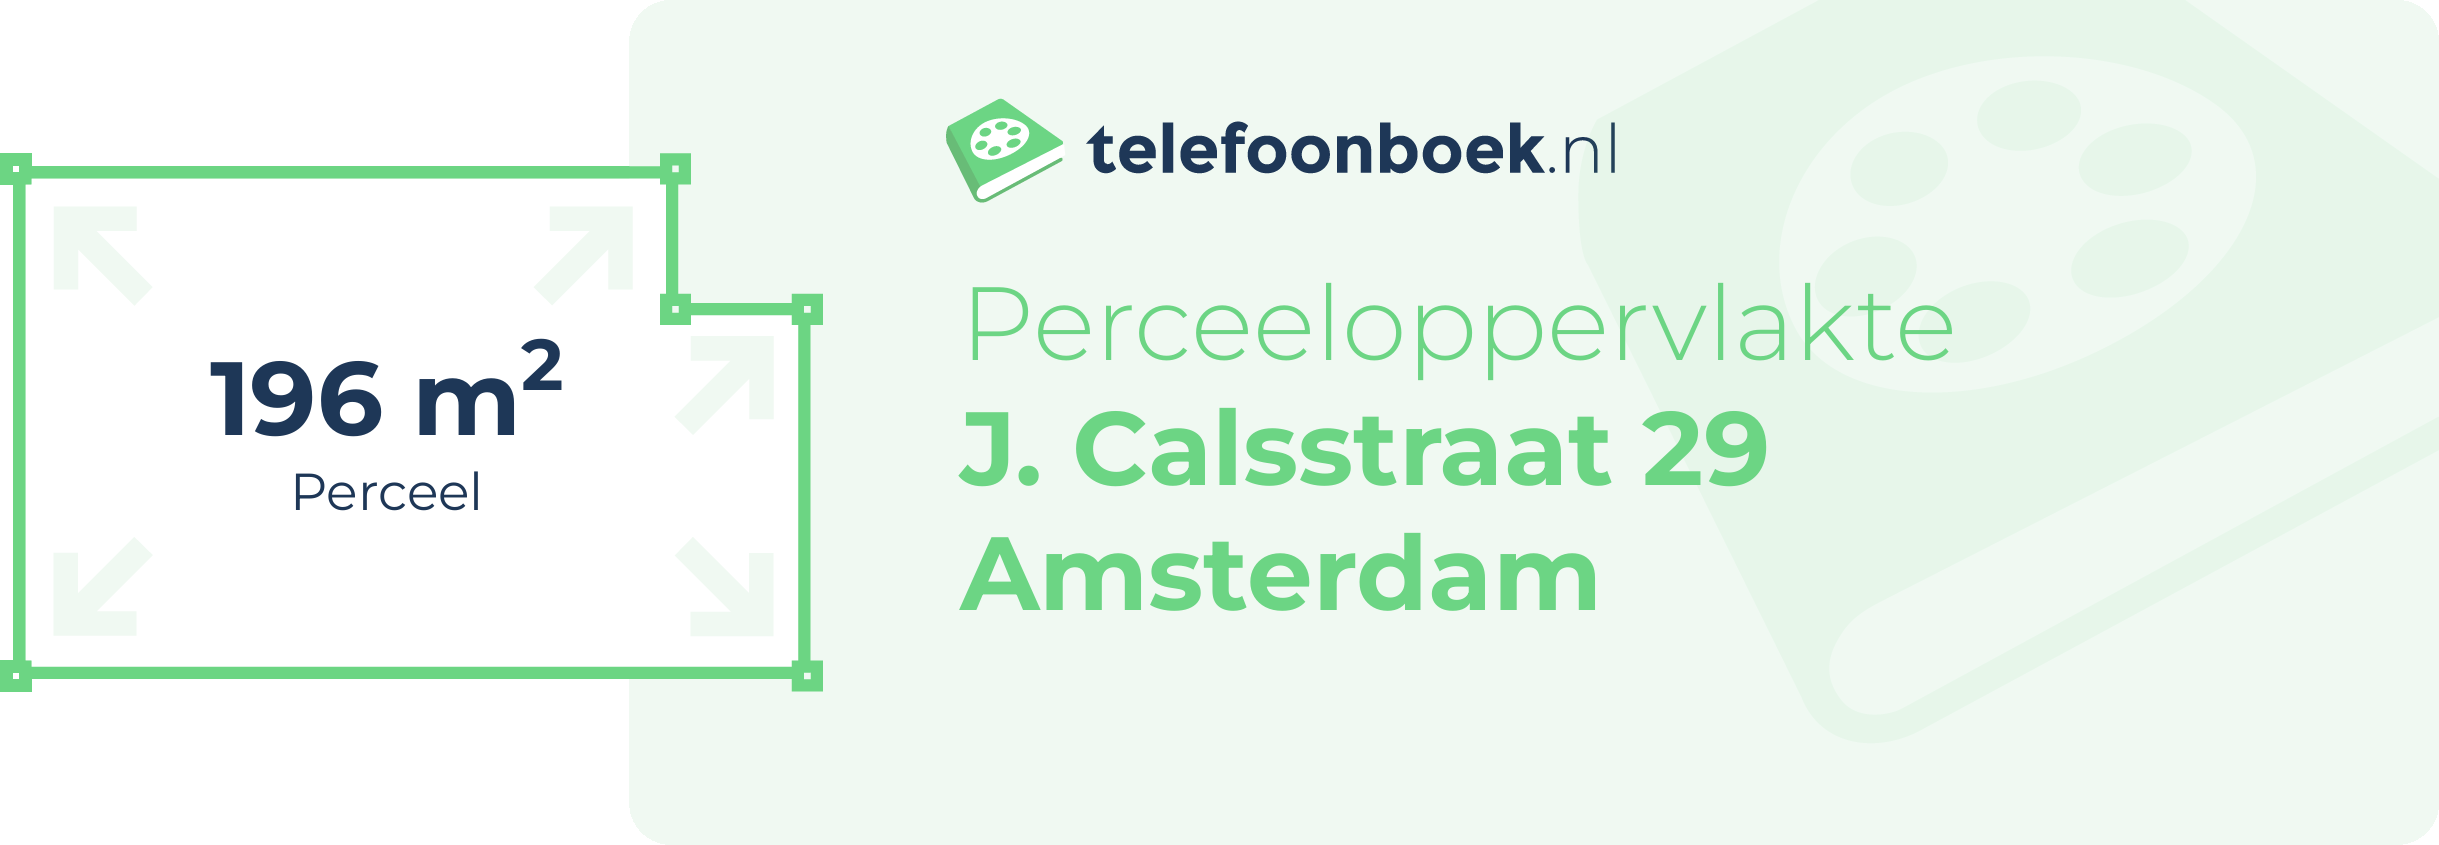 Perceeloppervlakte J. Calsstraat 29 Amsterdam